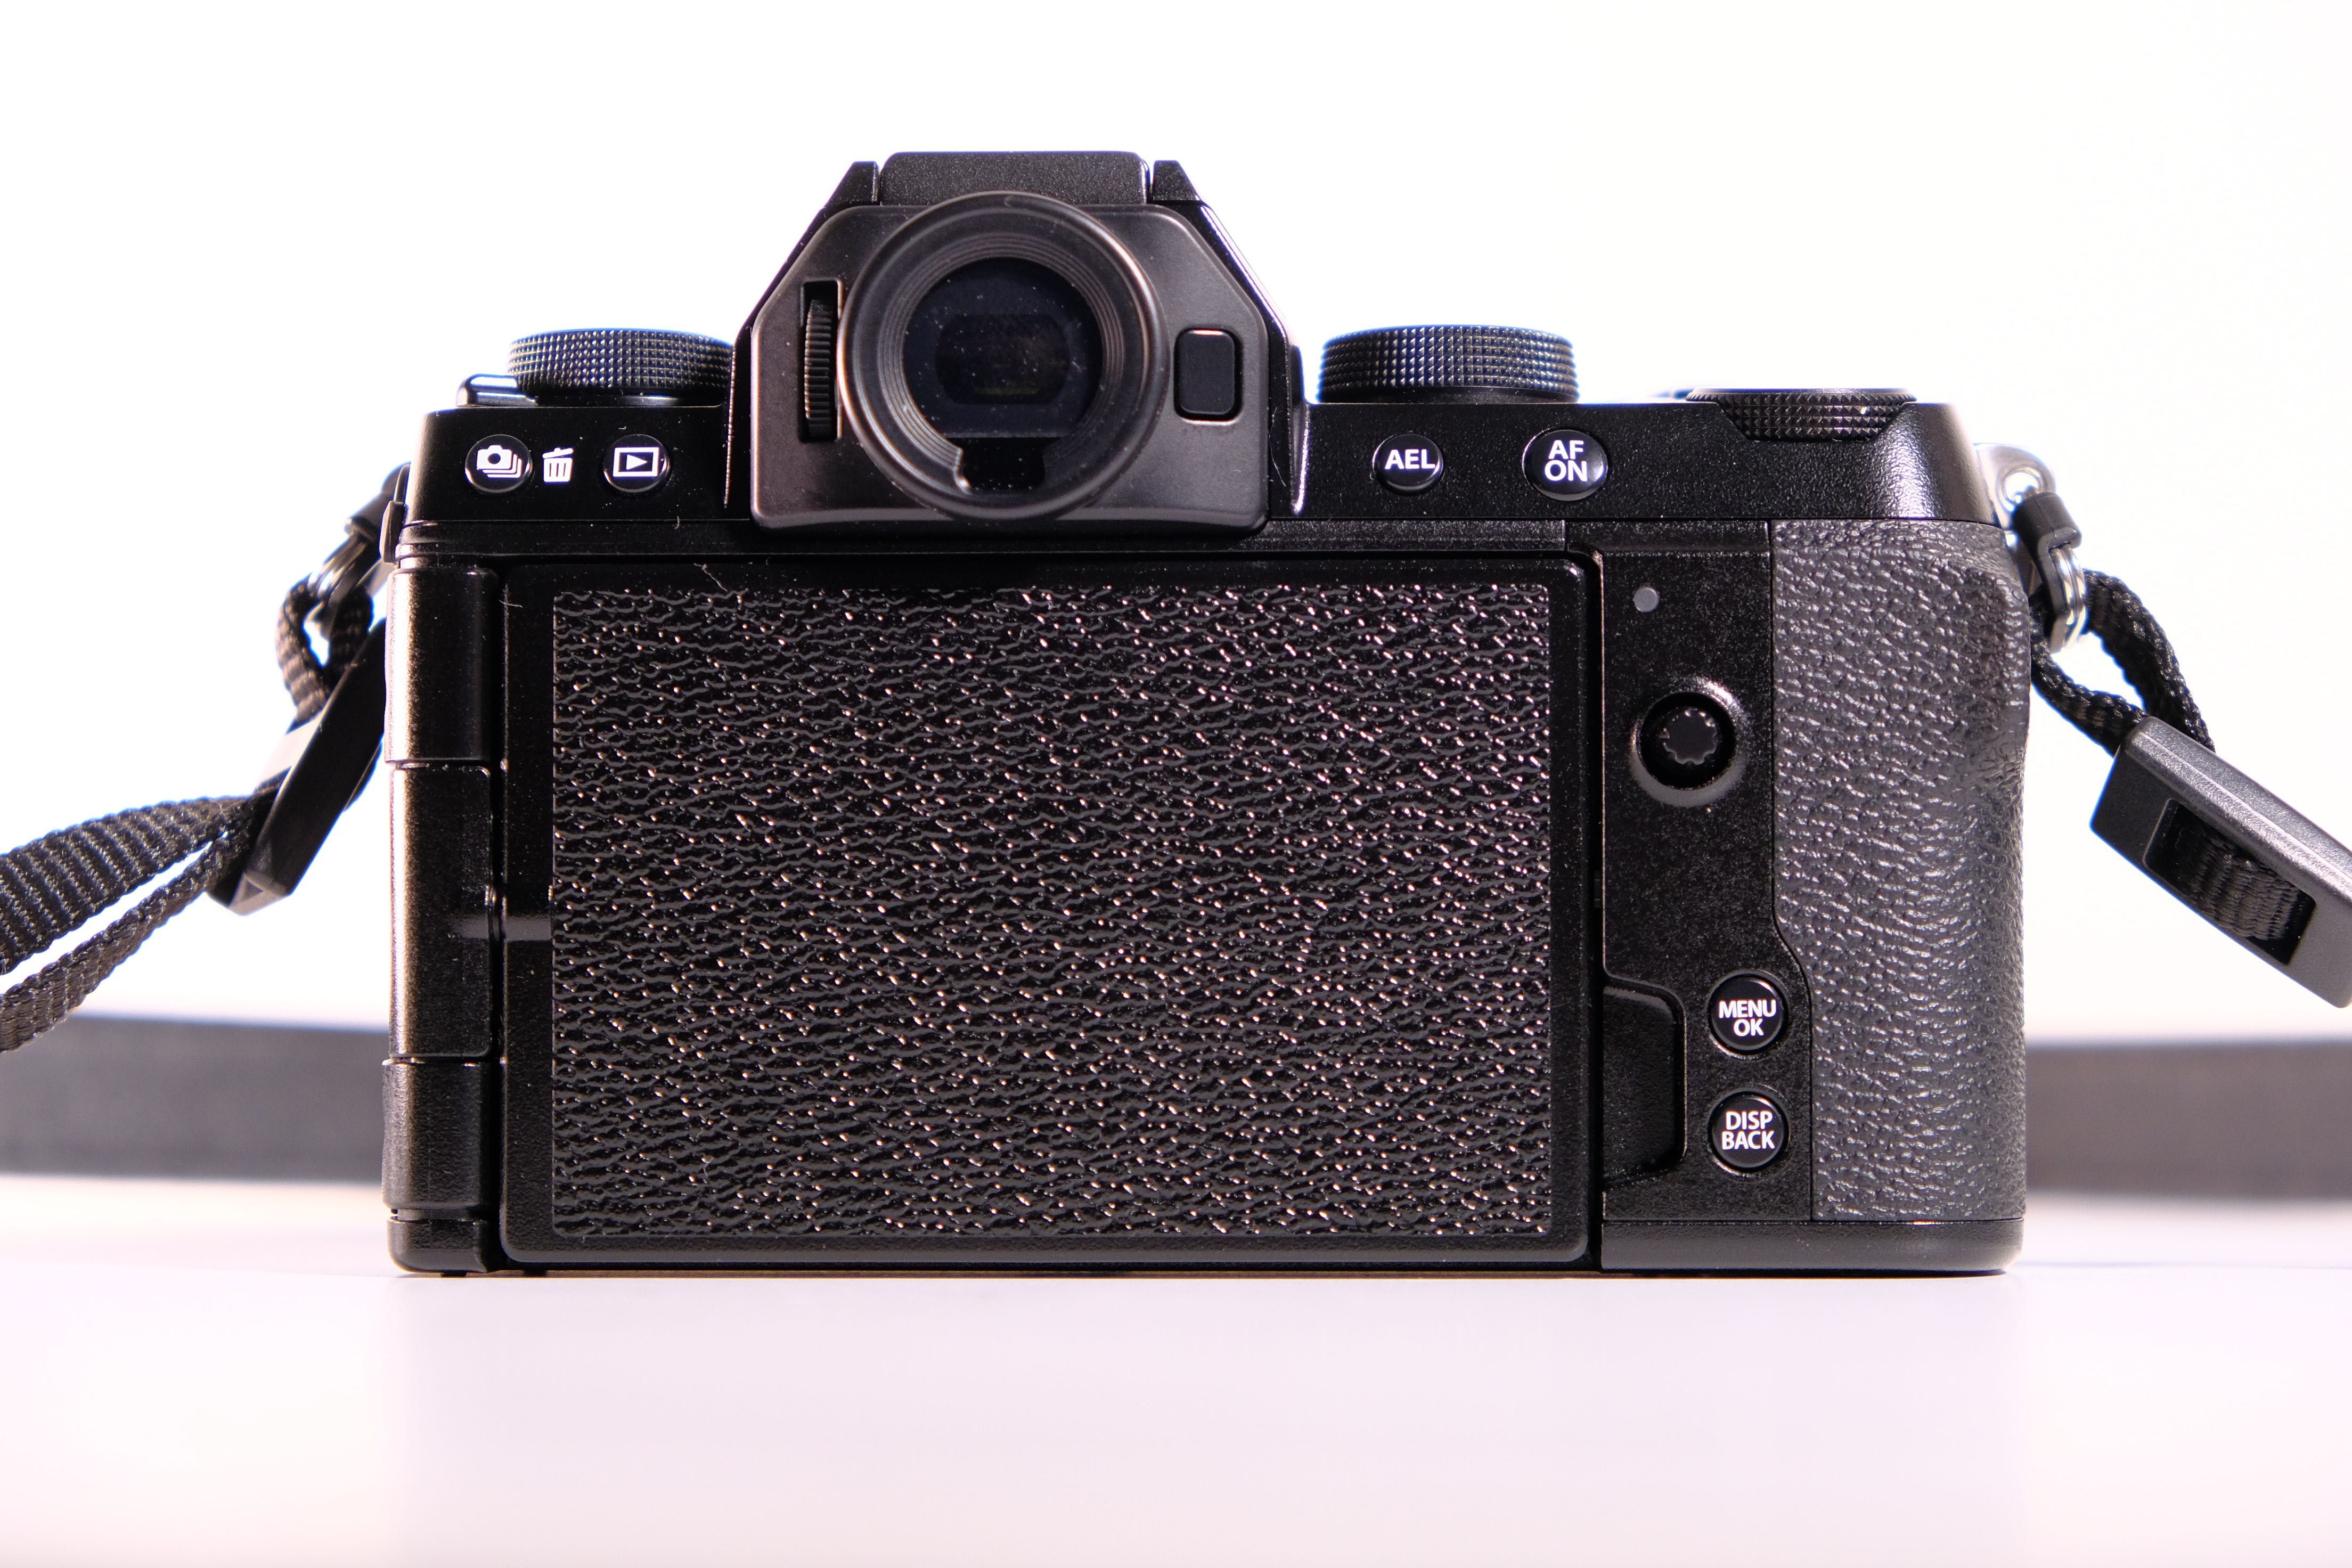 Fujifilm X-S10 body ( XS 10 ) 230 кадрів + гарантія / без передоплат